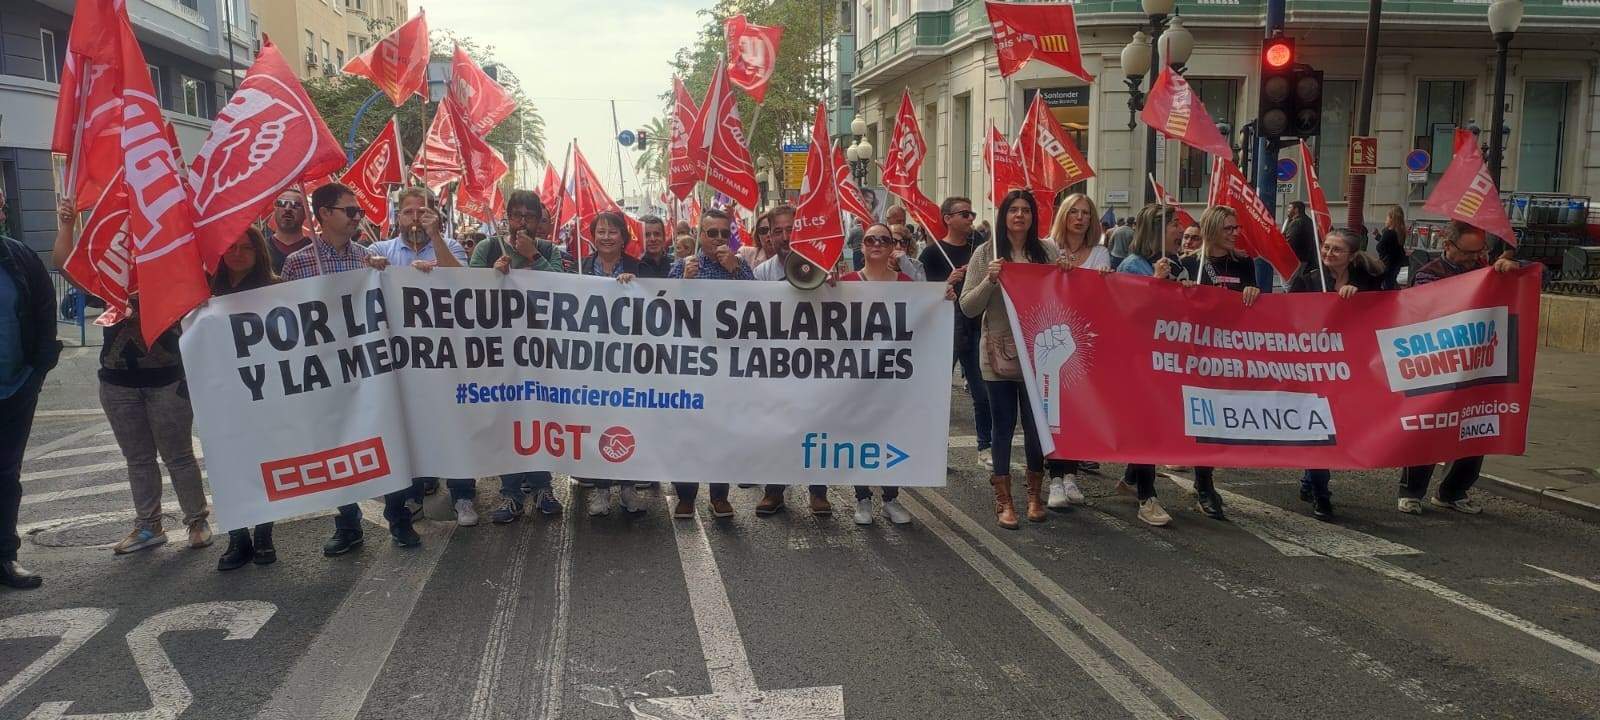 El Sabadell calma els sindicats davant les protestes: l'acord salarial arribarà "aviat"